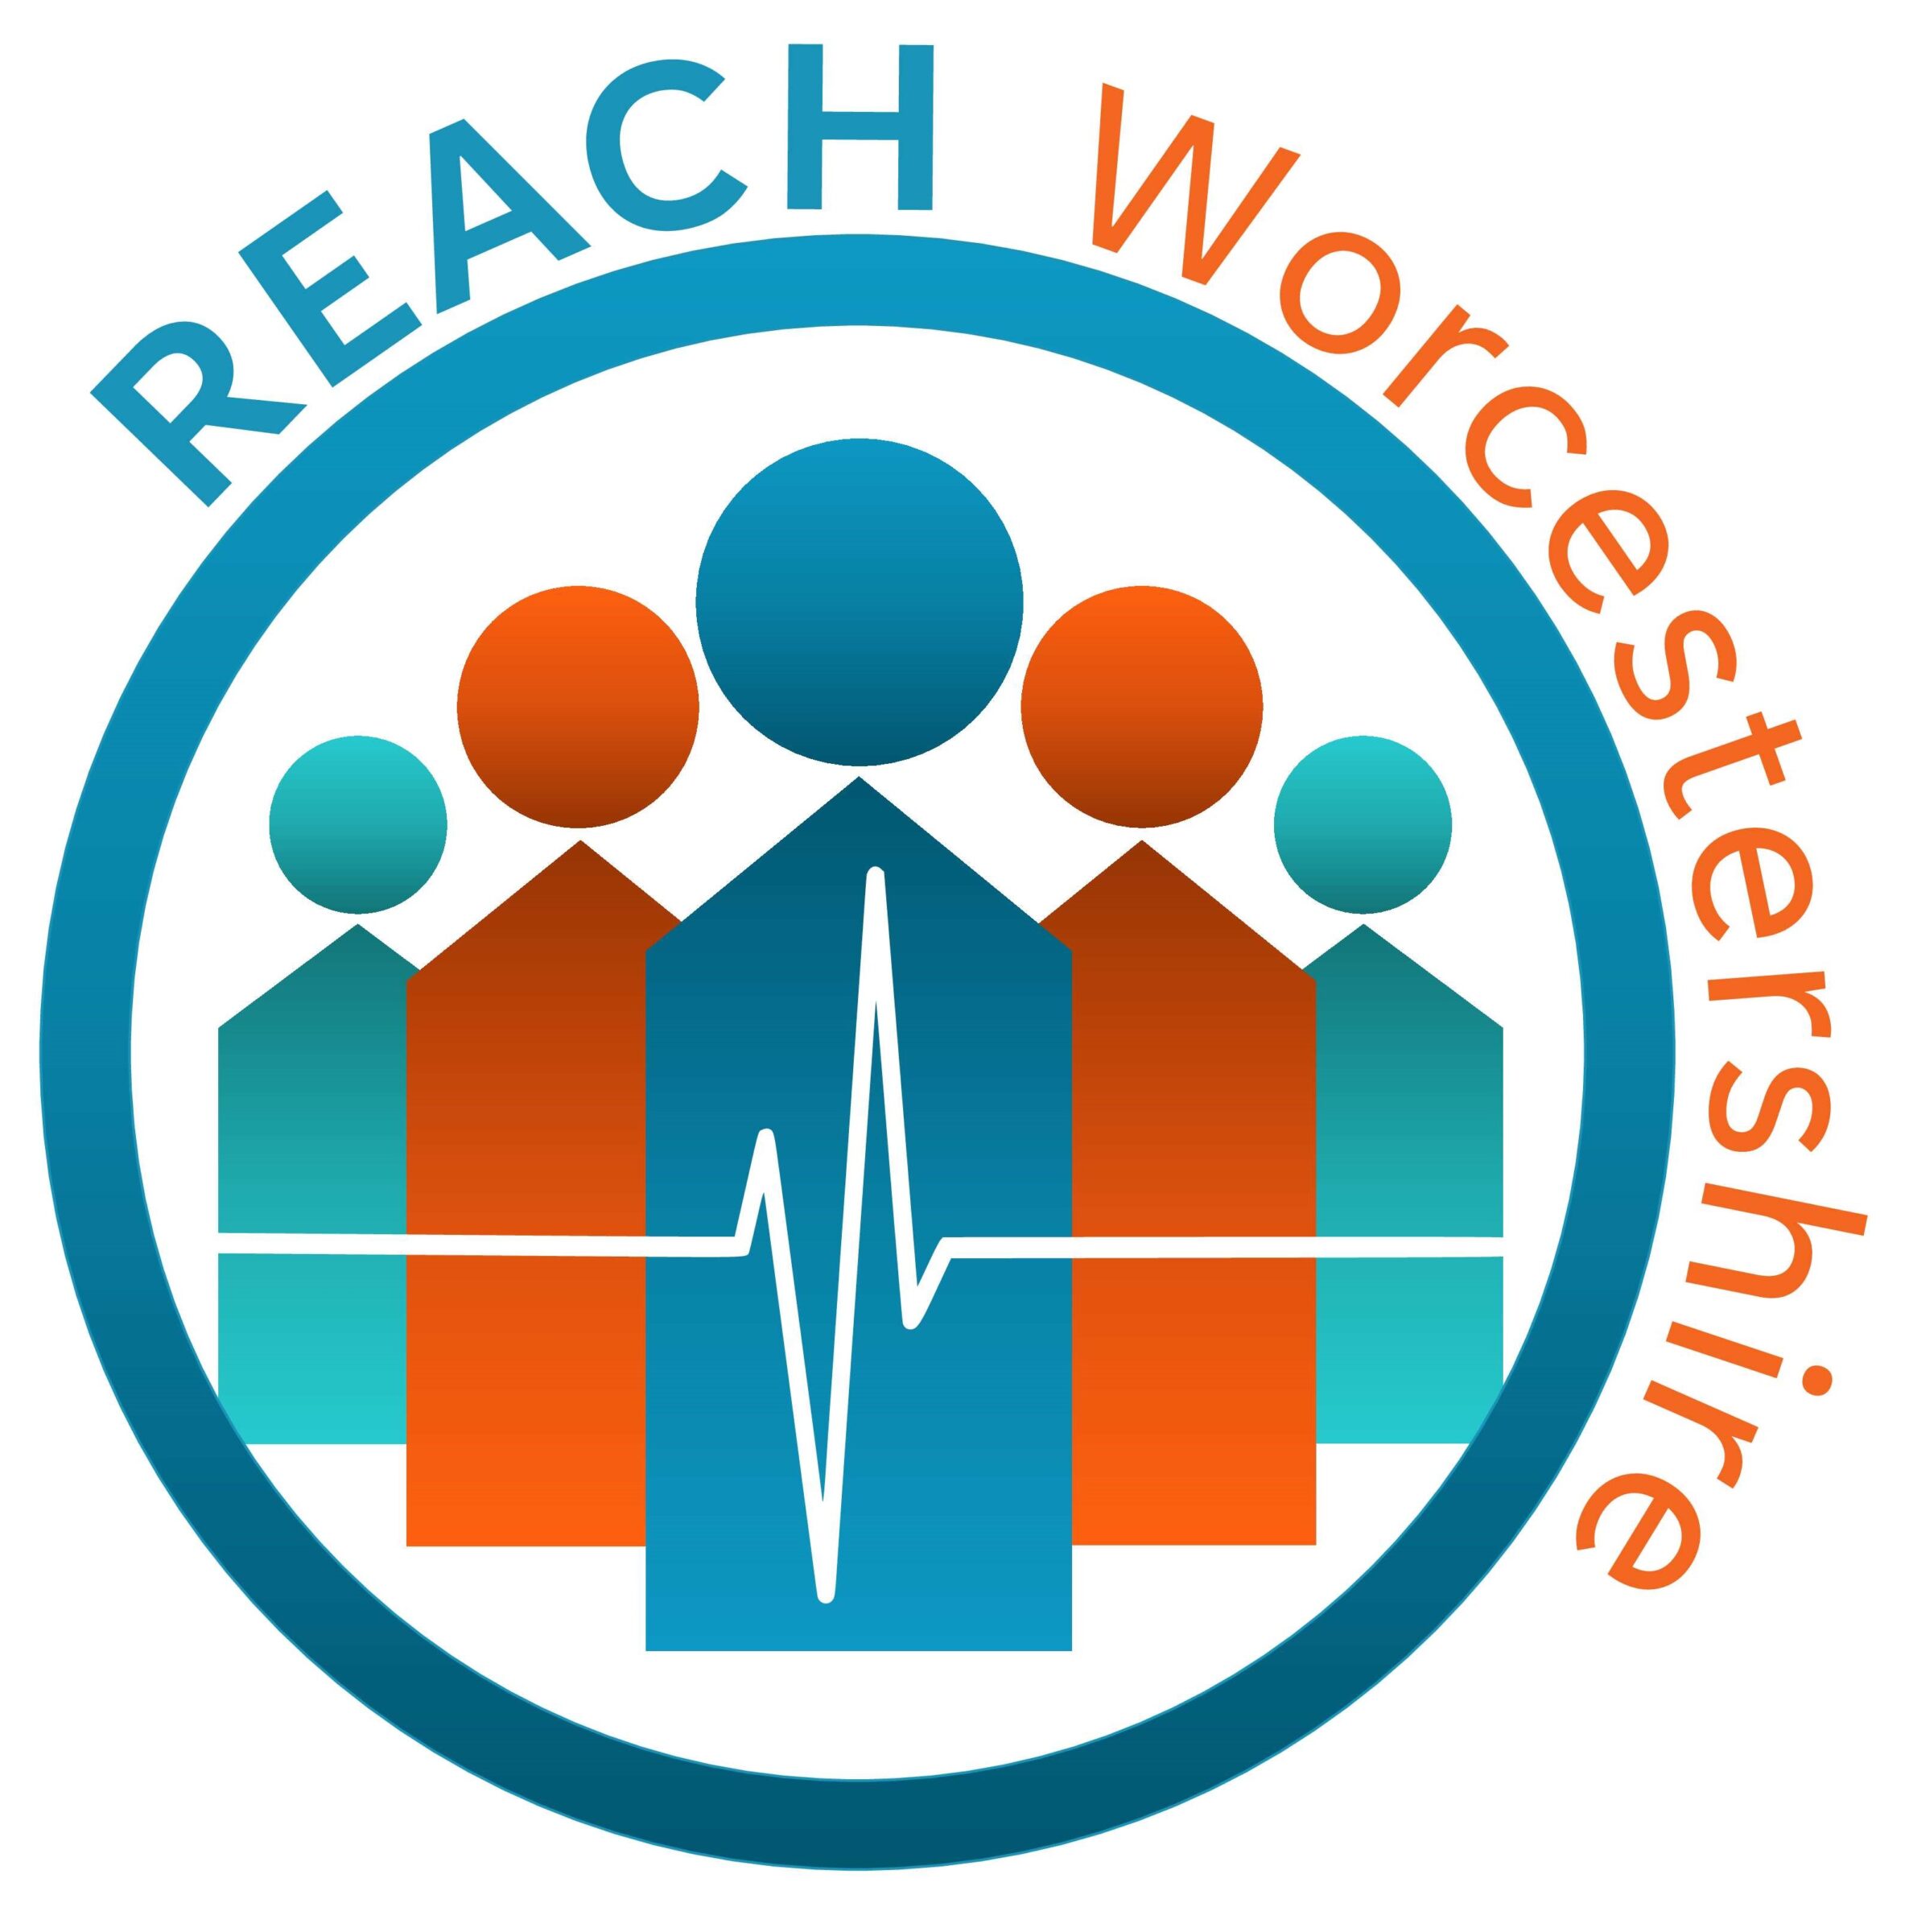 REACH Logo Circle Text